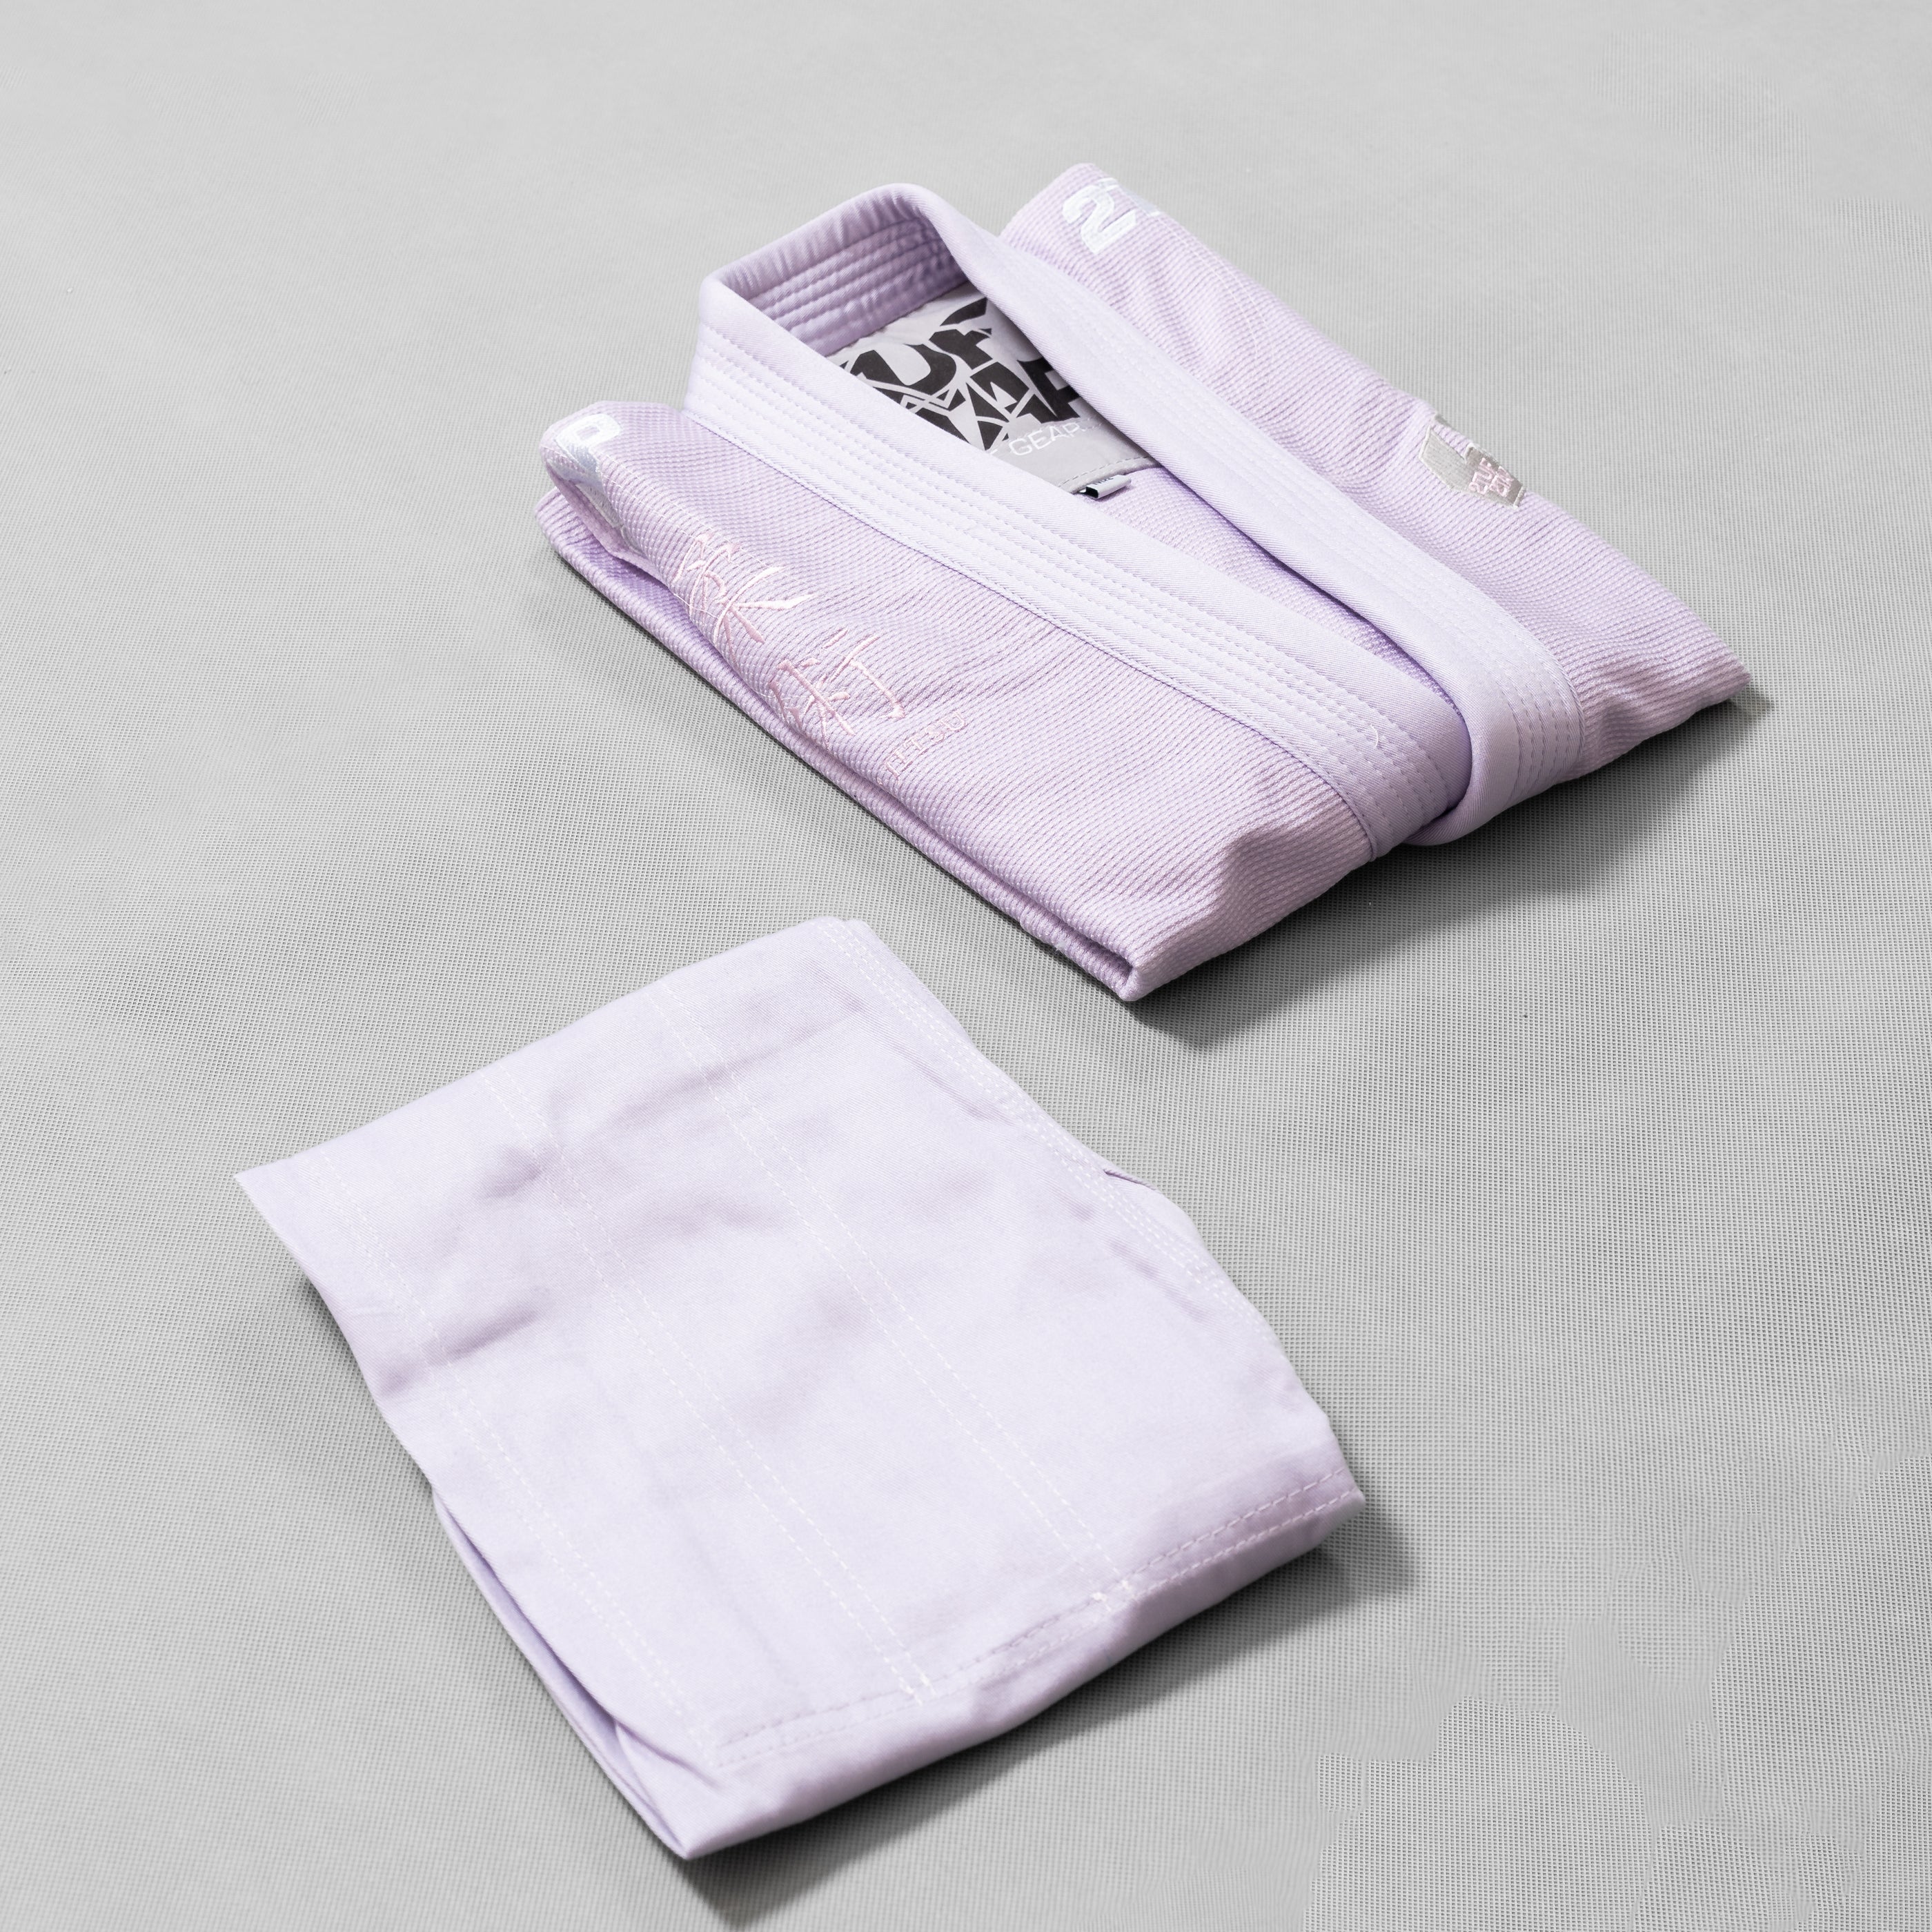 'Bridge' Jiu-Jitsu Gi Uniform - Thistle Purple/Lavendar